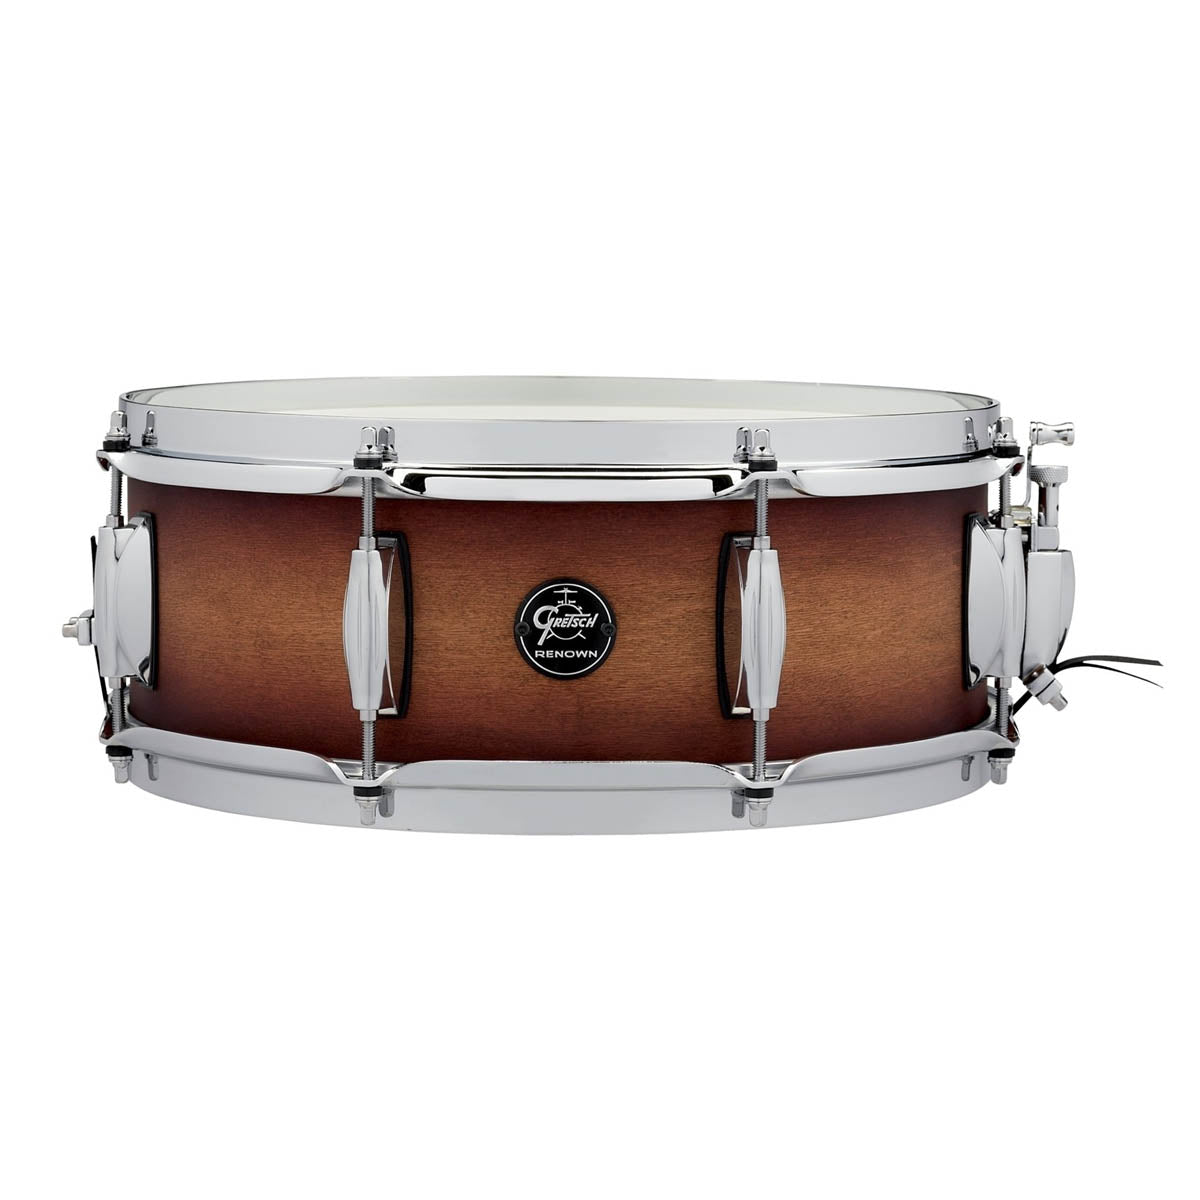 Gretsch Renown Maple 14"x5" Snare Drum in Satin Tobacco Burst